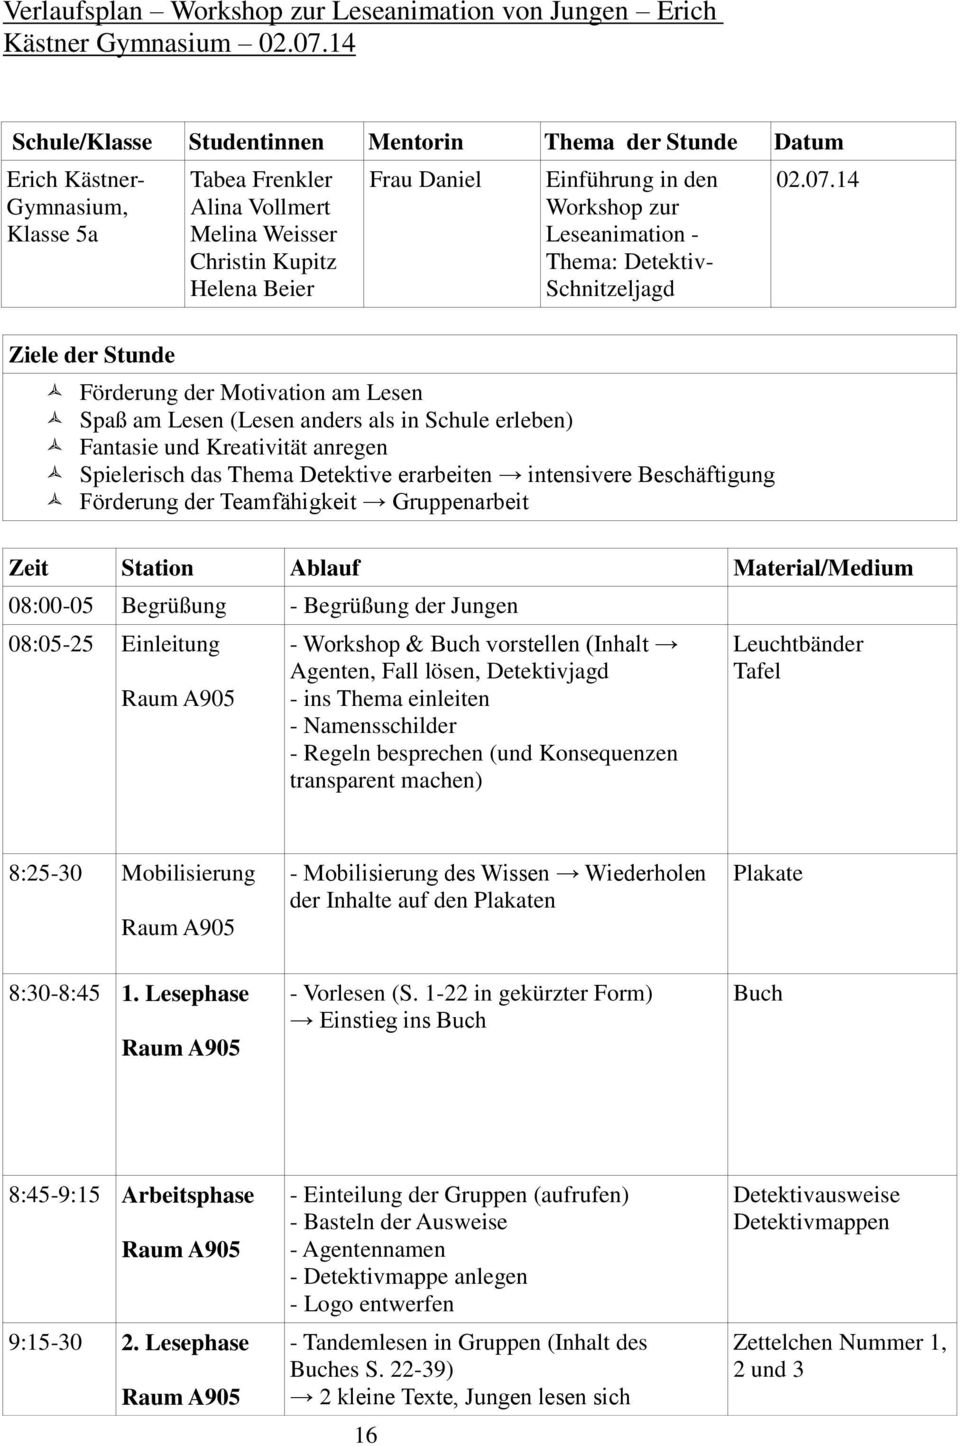 Einführung in den Workshop zur Leseanimation - Thema: Detektiv- Schnitzeljagd Datum 02.07.